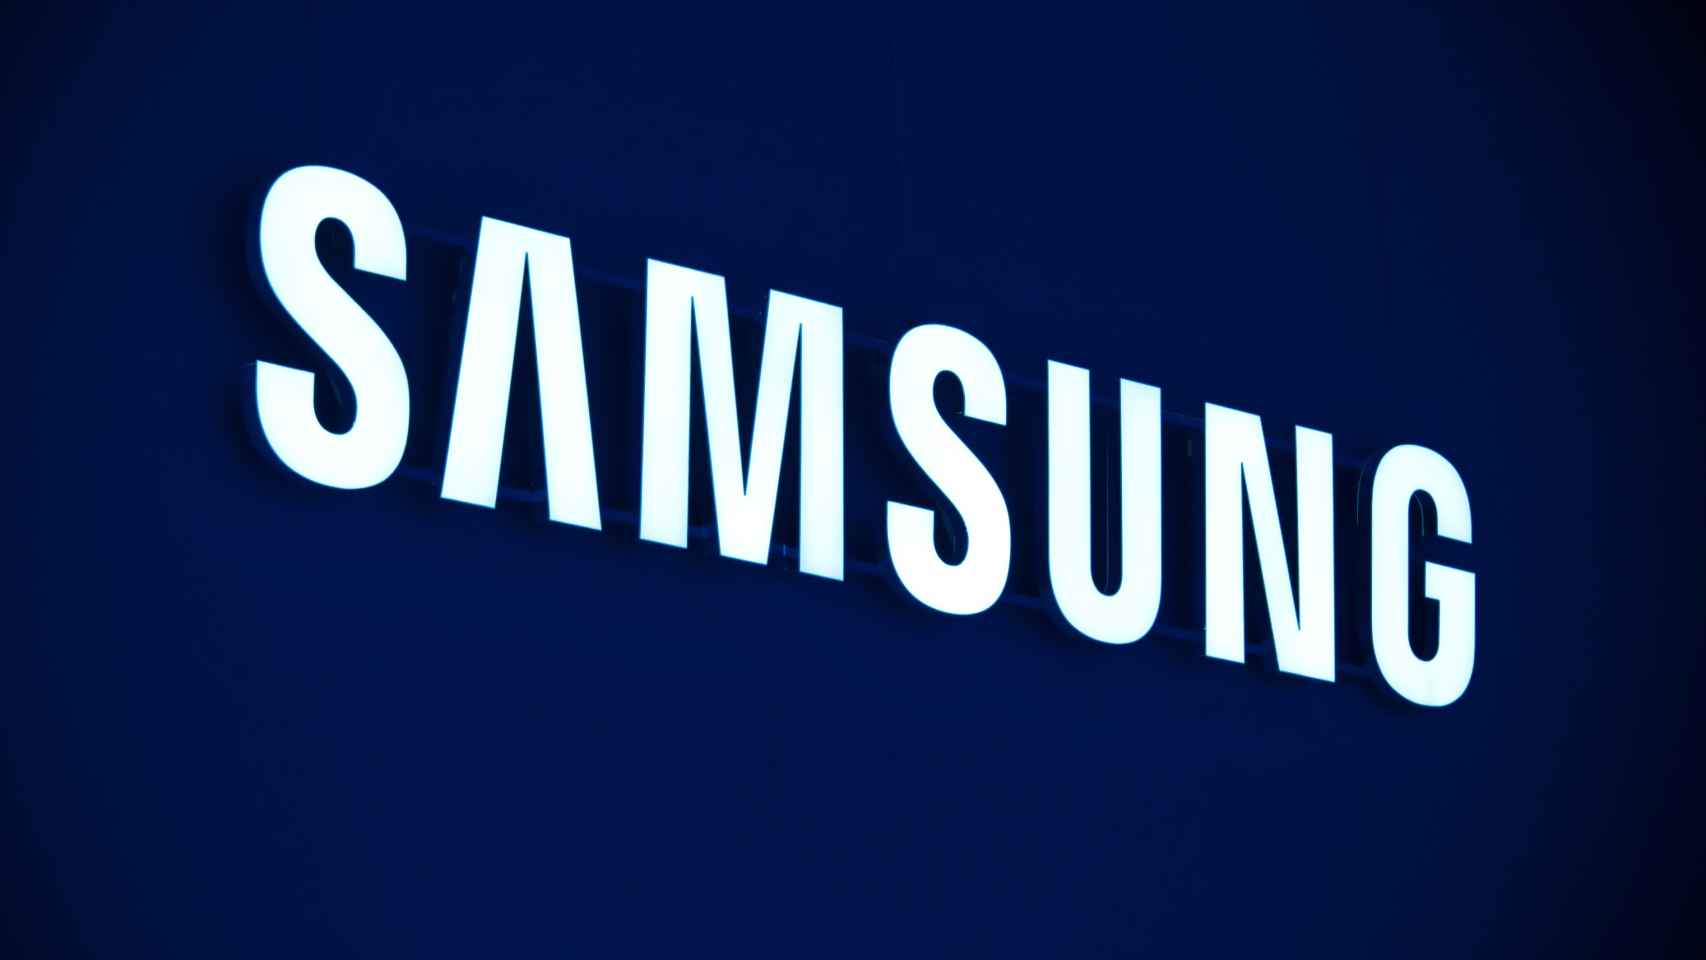 El logotipo de la marca Samsung en una imagen de archivo.